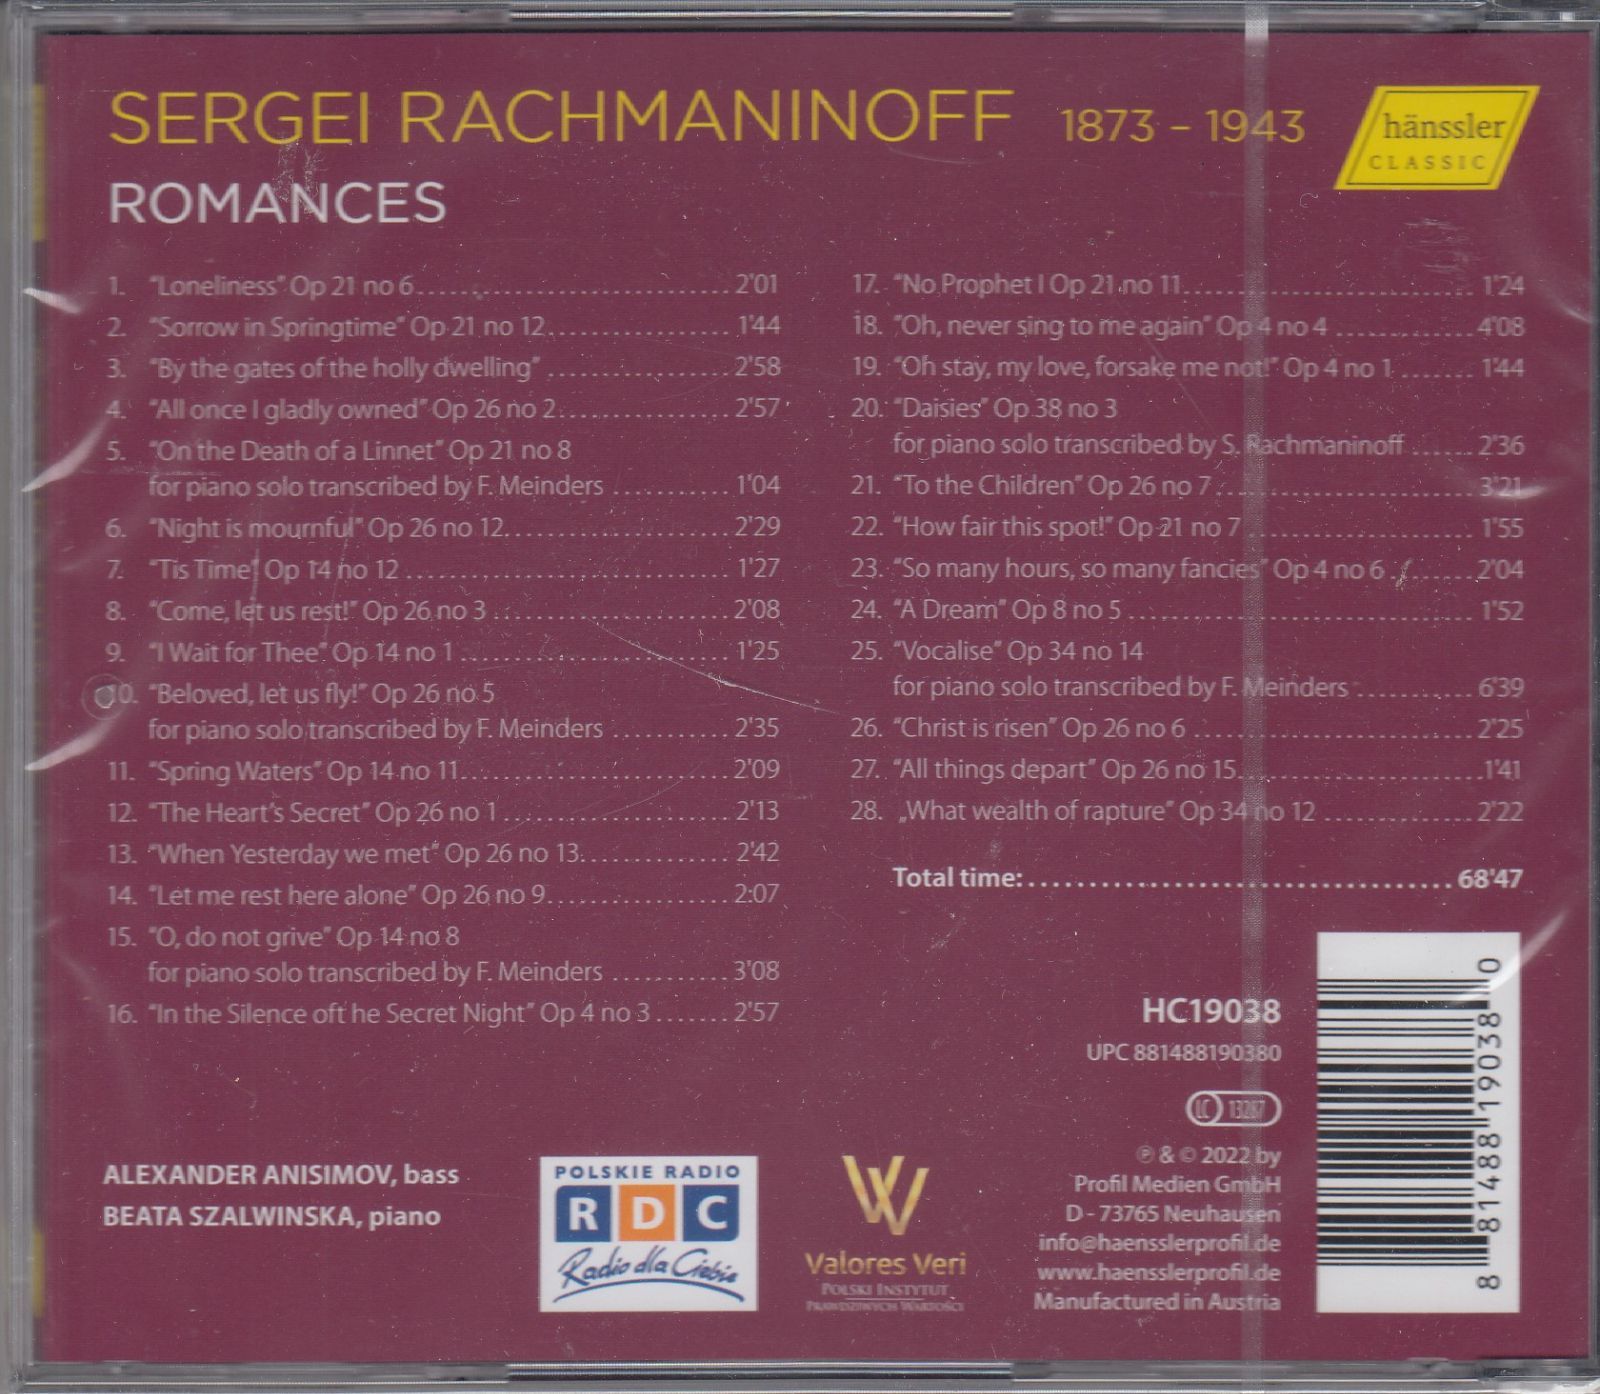 CD/Hanssler]ラフマニノフ:12の歌Op. 21(抜粋)u0026聖なる僧院の門のかたわらにu002615の歌Op. 26から第2曲私ははすべてを奪われた他 /アレクサンドル・ミハイロヴィチ・アニシモフ(b)u0026ベアタ・シャルヴィンスカ(p) - メルカリ